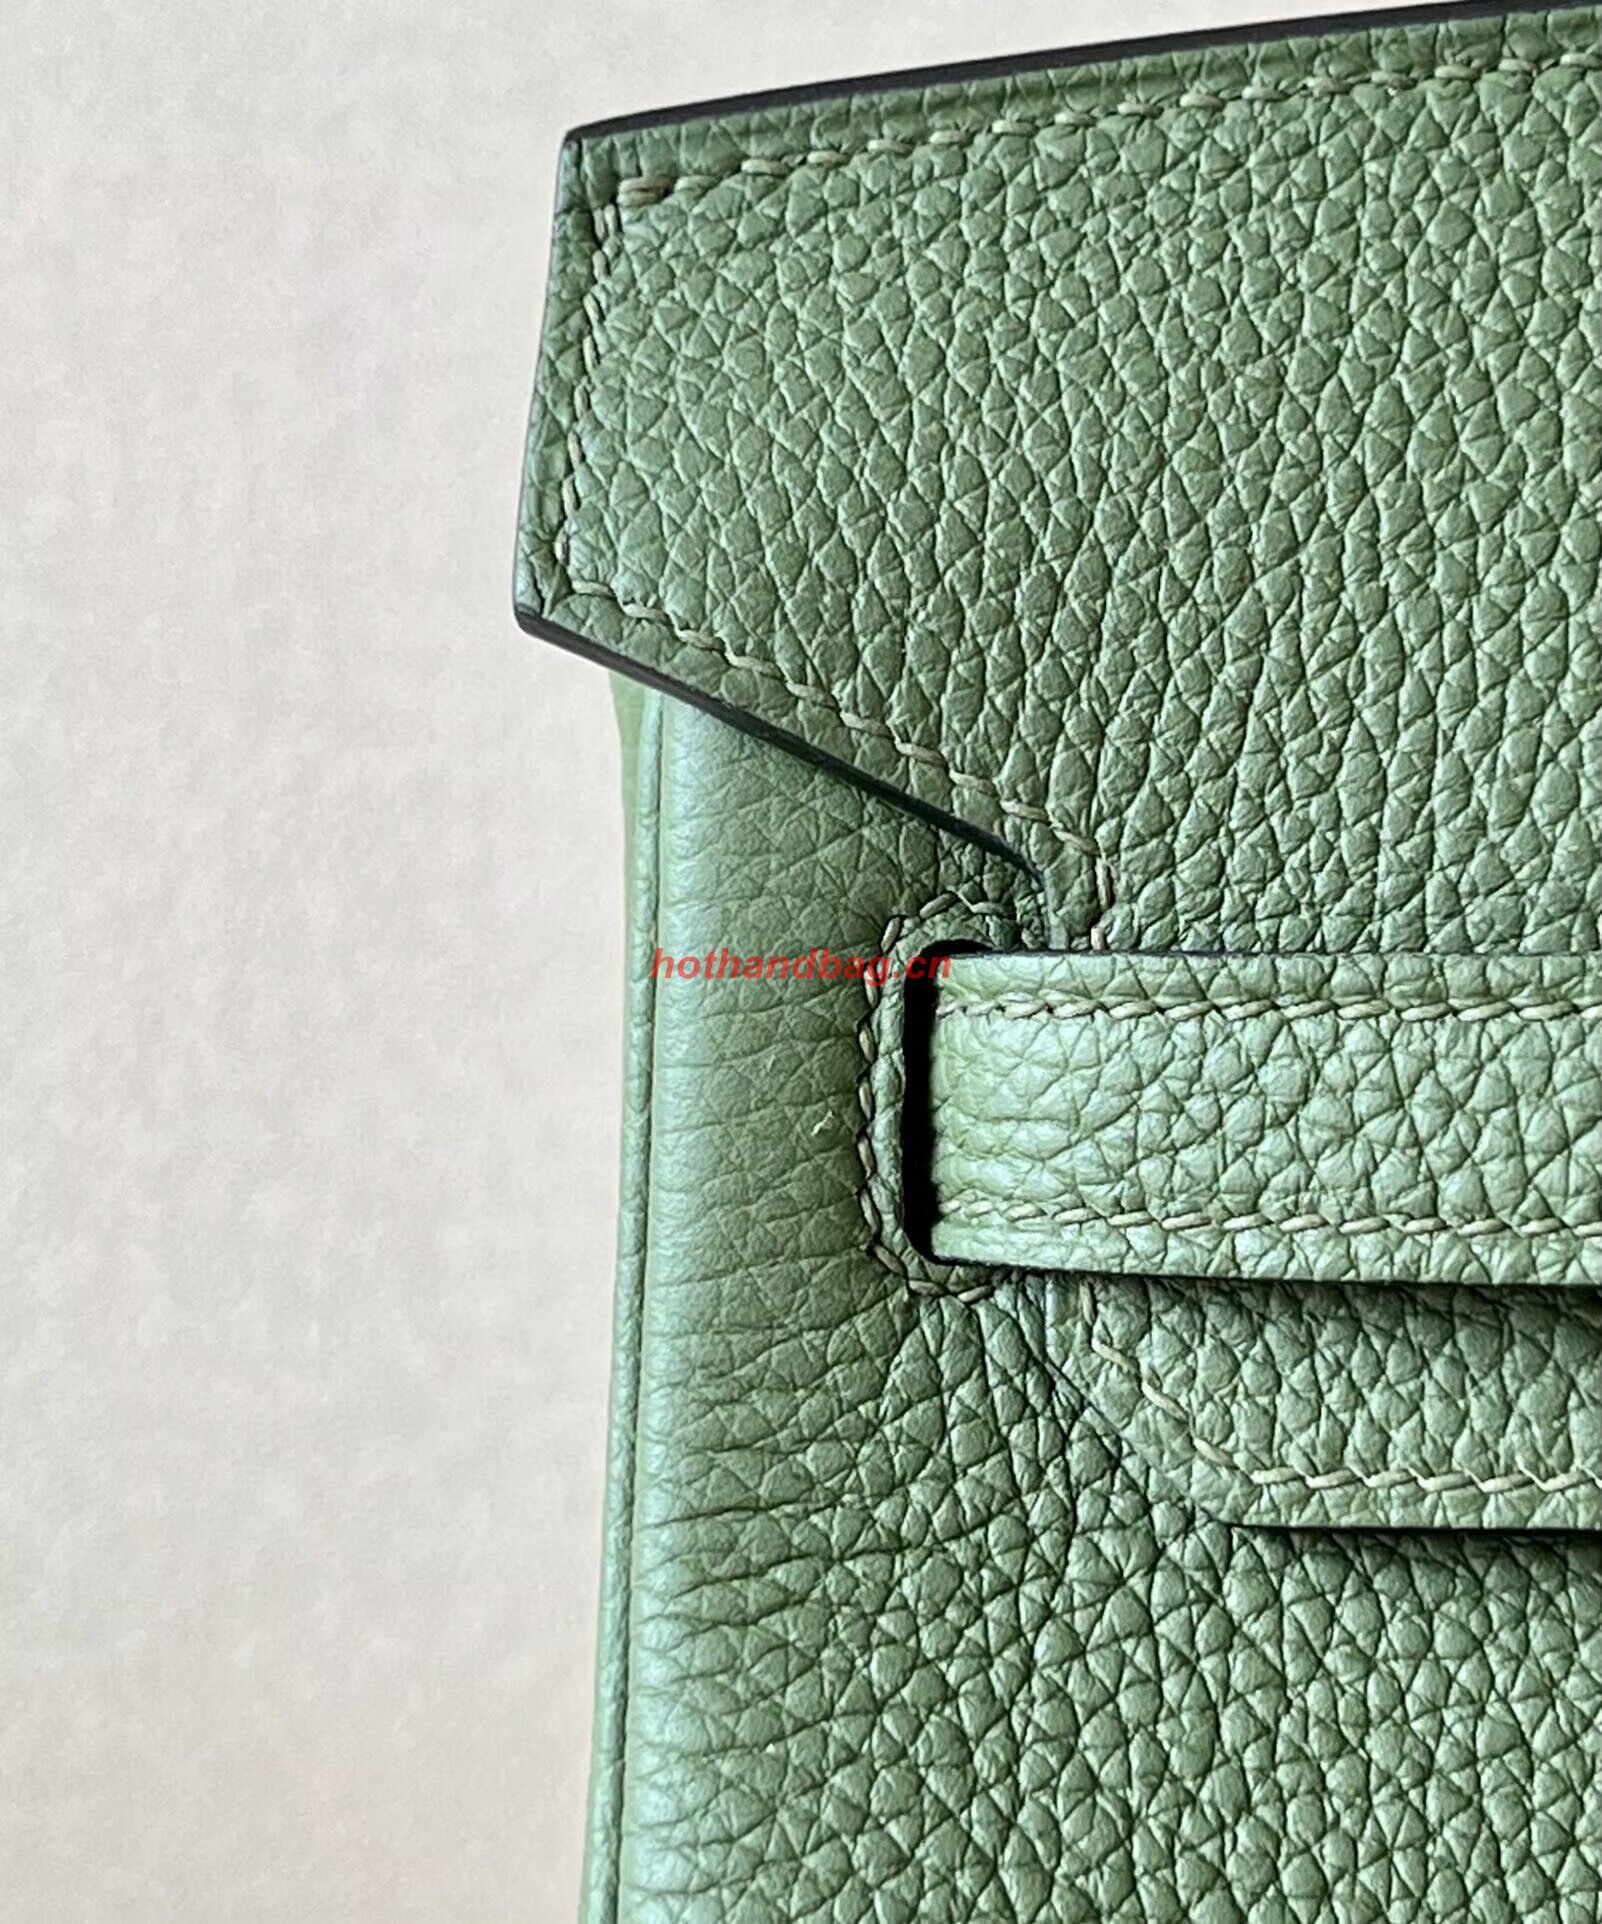 Hermes Birkin 25CM Bag Original Togo Leather 17888 Green